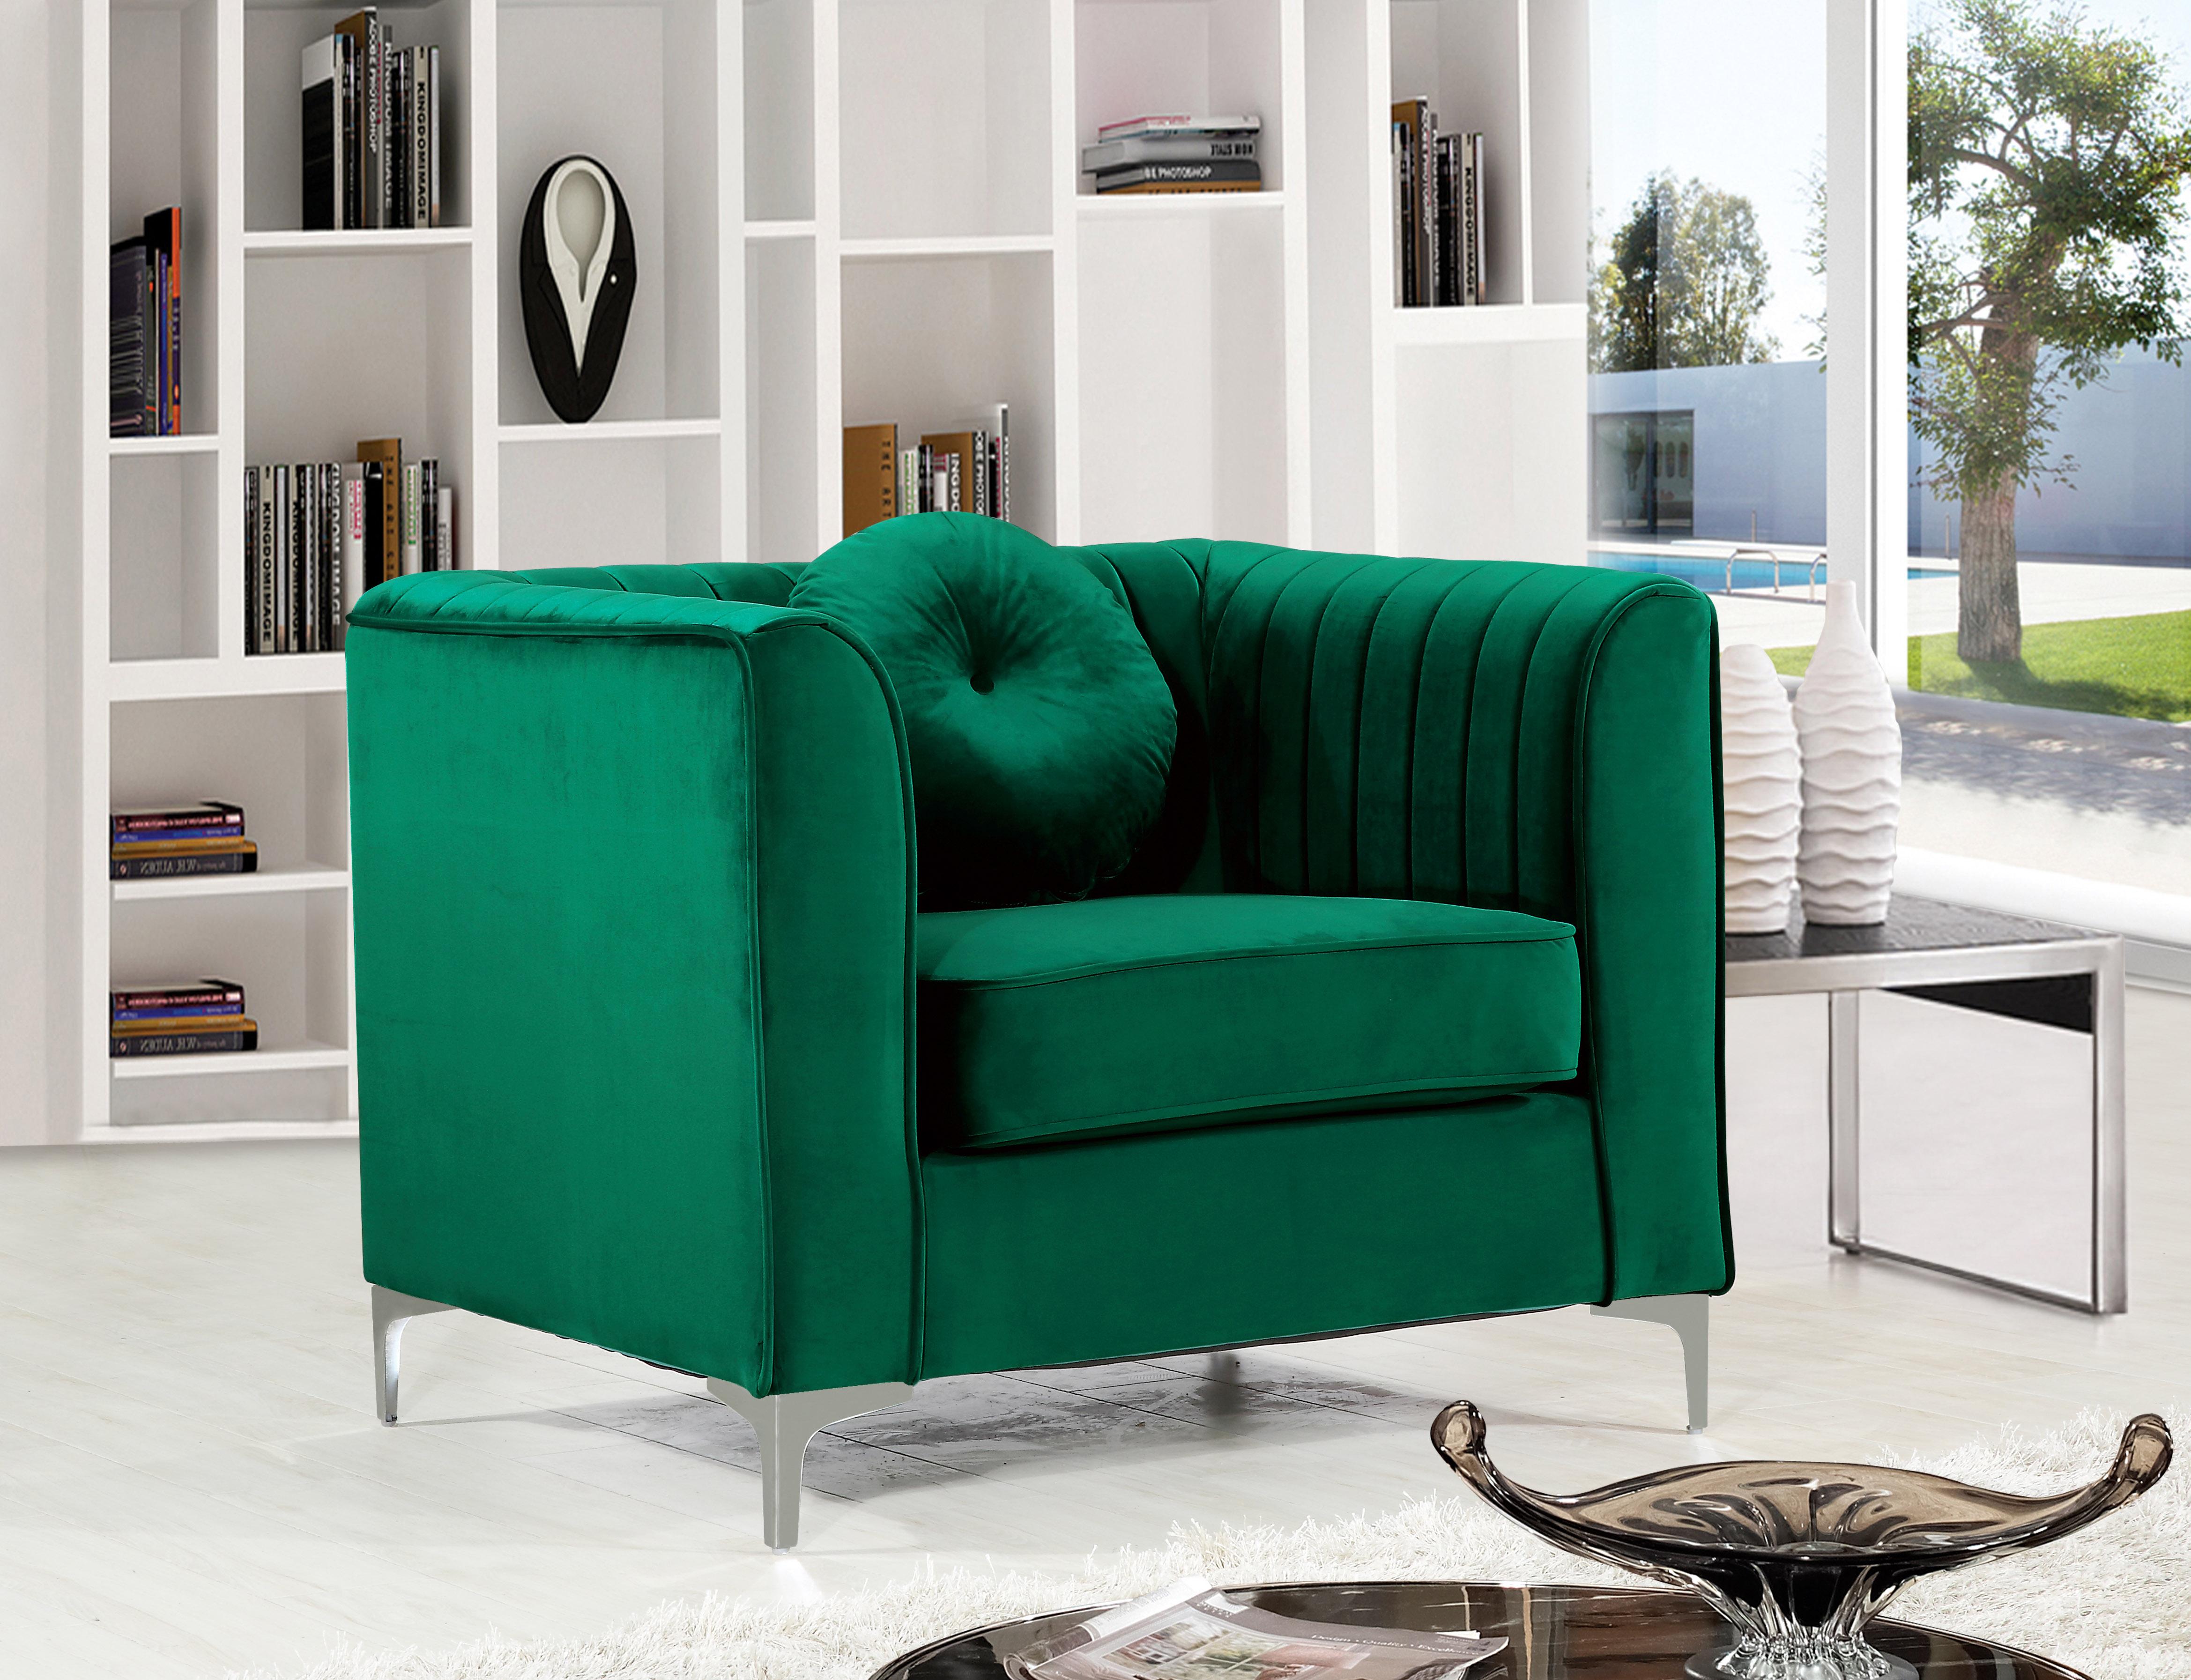 

    
612Green-S-Set-3 Green Velvet Sofa Set 3Pcs Isabelle 612Green-S Meridian Contemporary Modern
